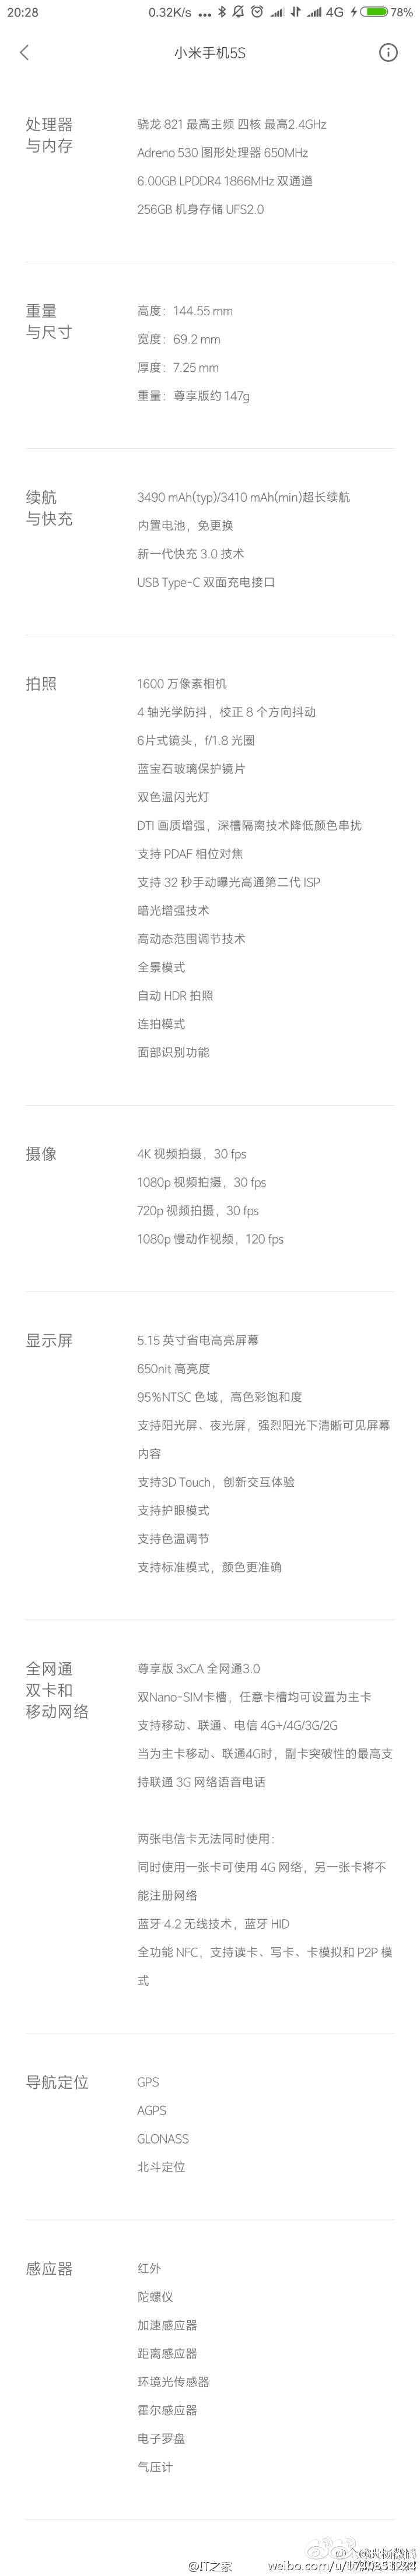 Xiaomi Mi 5s leaks